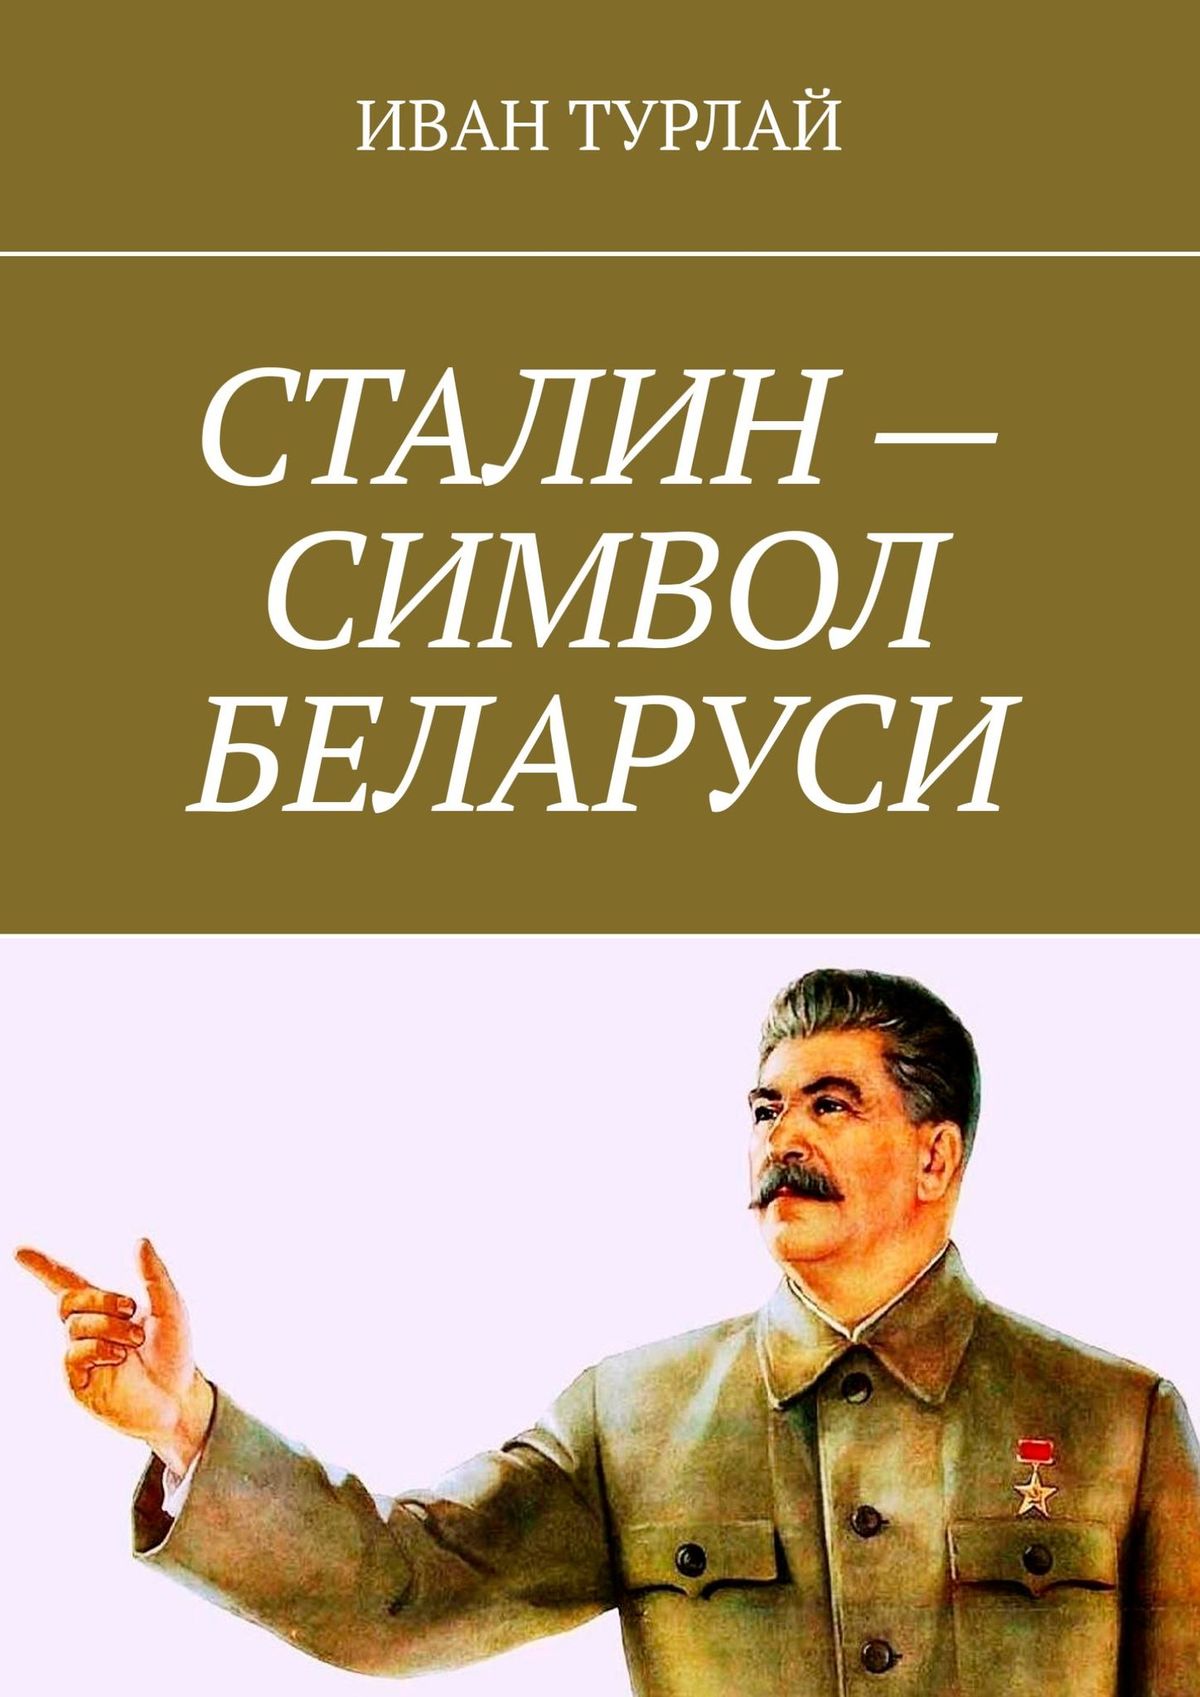 Сталин – символ Беларуси